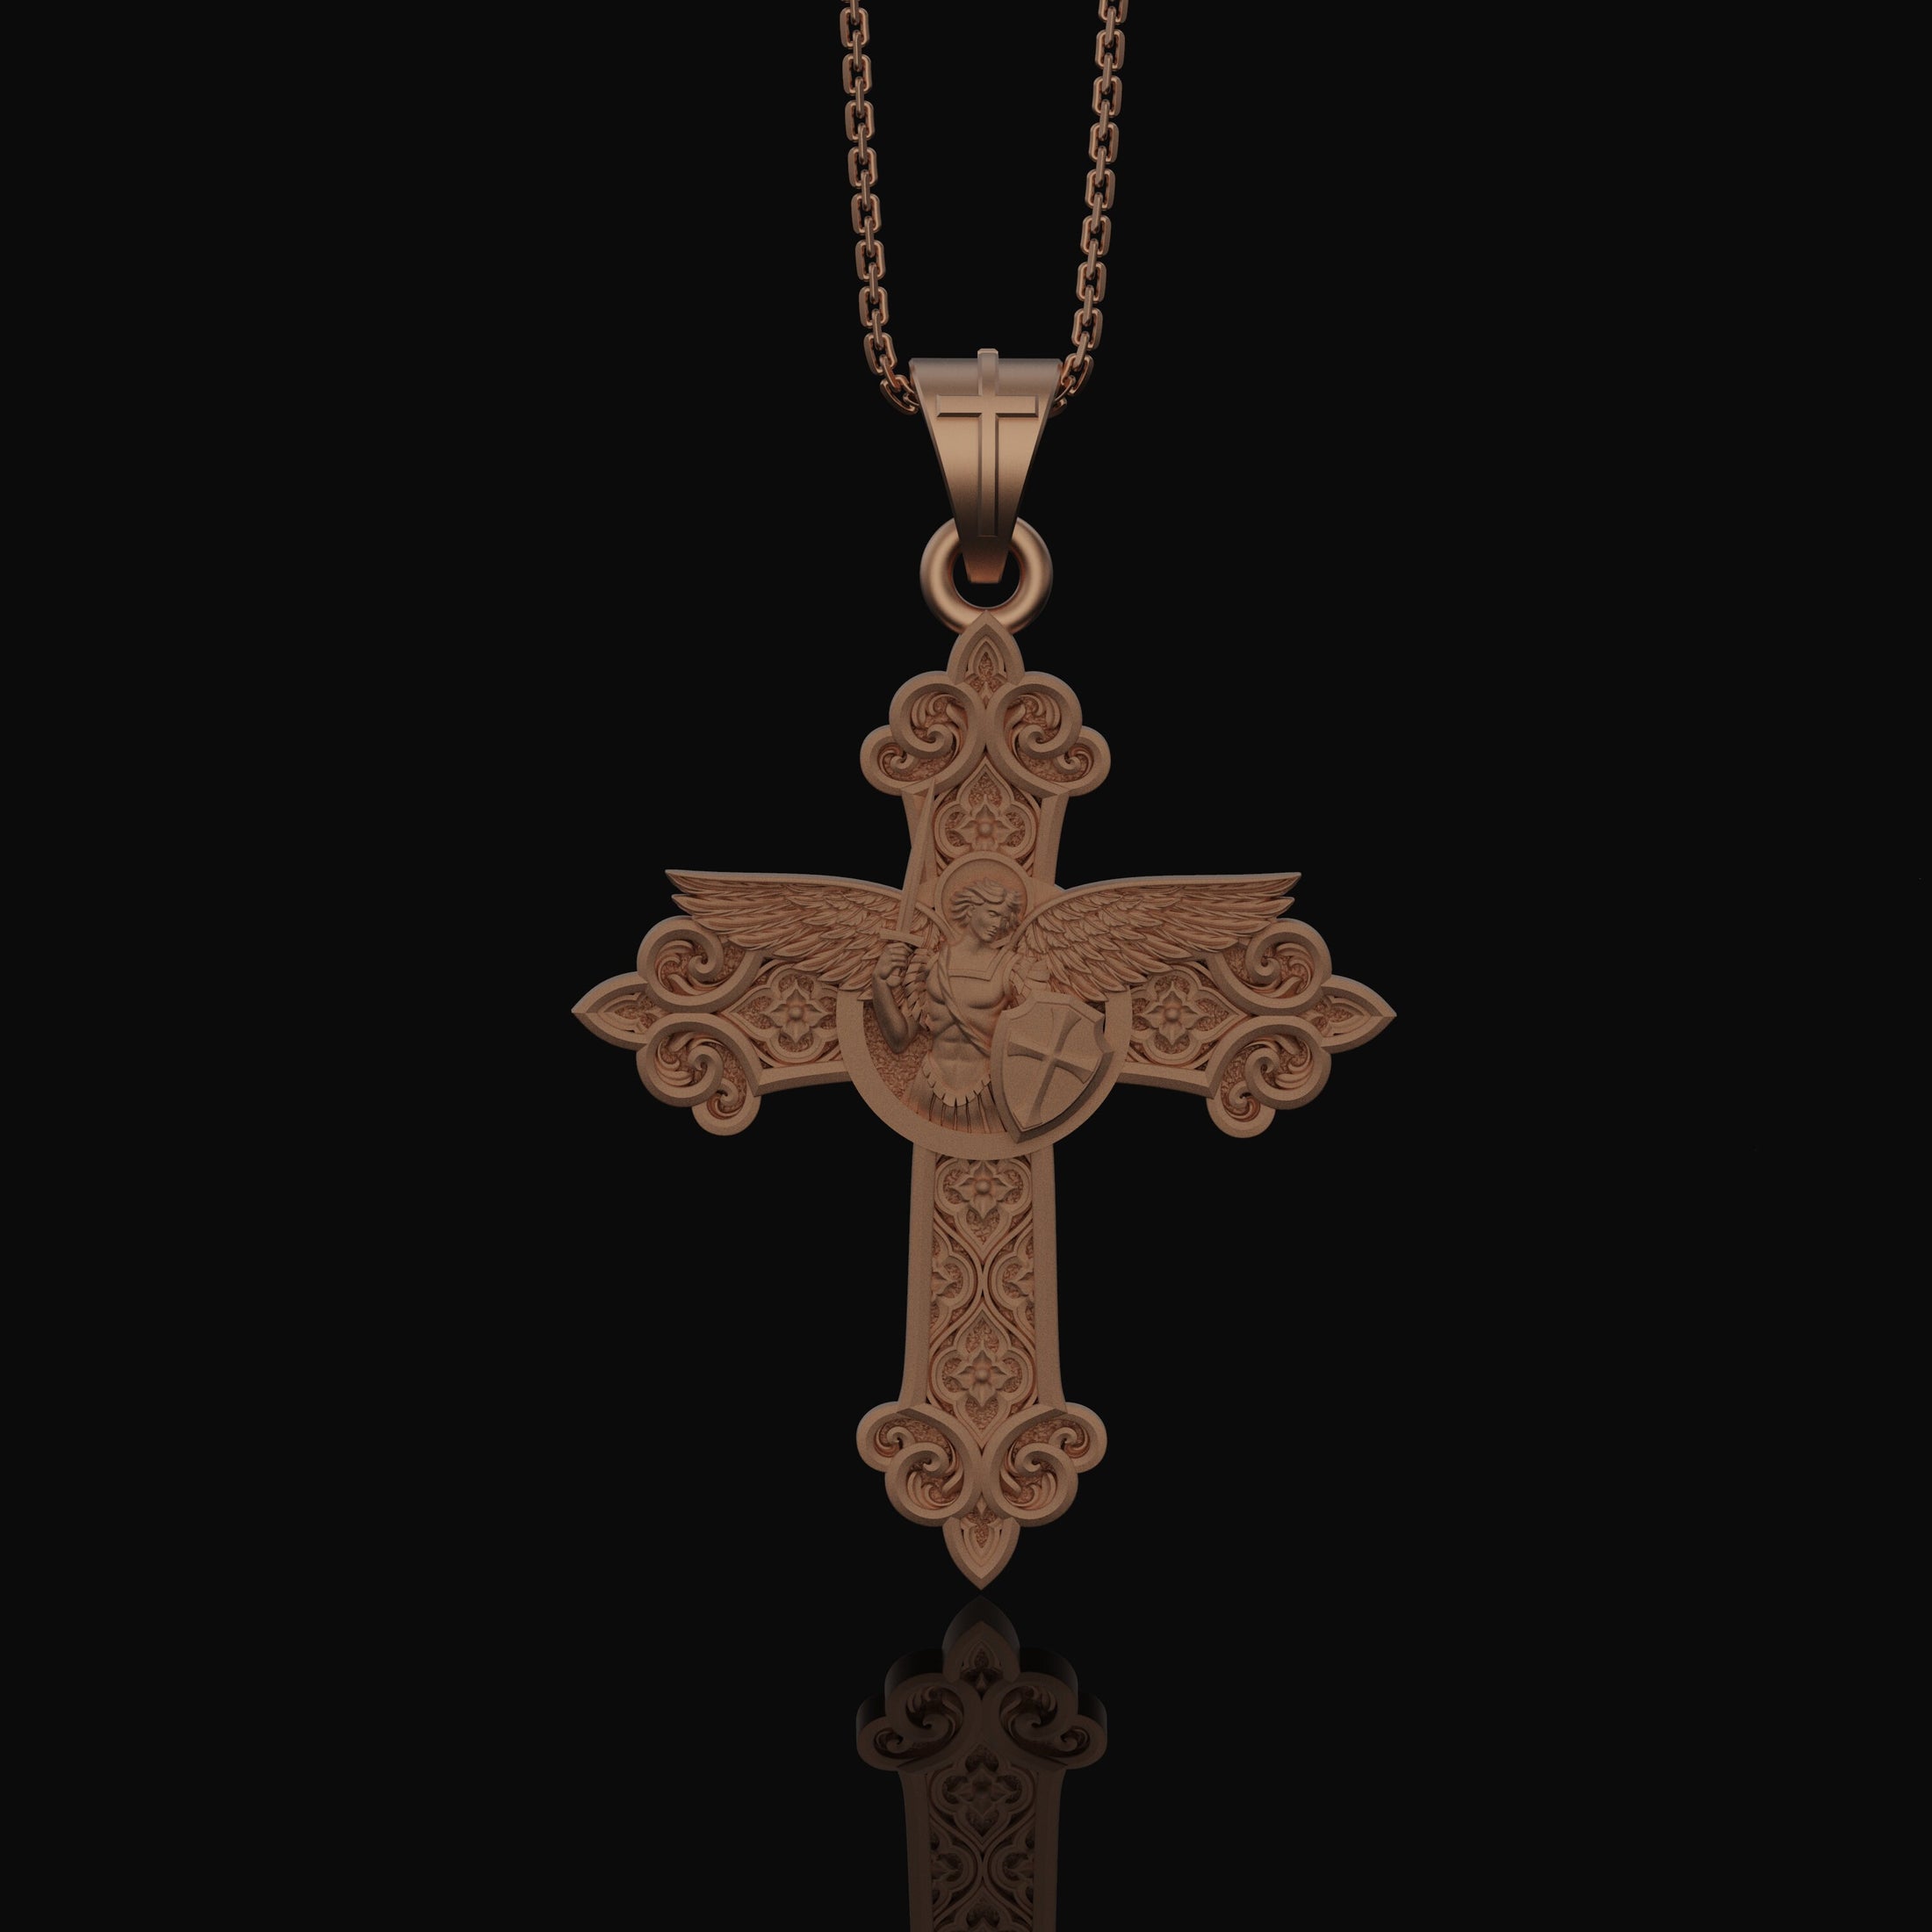 St. Michael Protection Silver Cross, 'Quis ut Deus' Engraved, Archangel Michael Amulet, Symbol of Divine Guard Rose Gold Matte